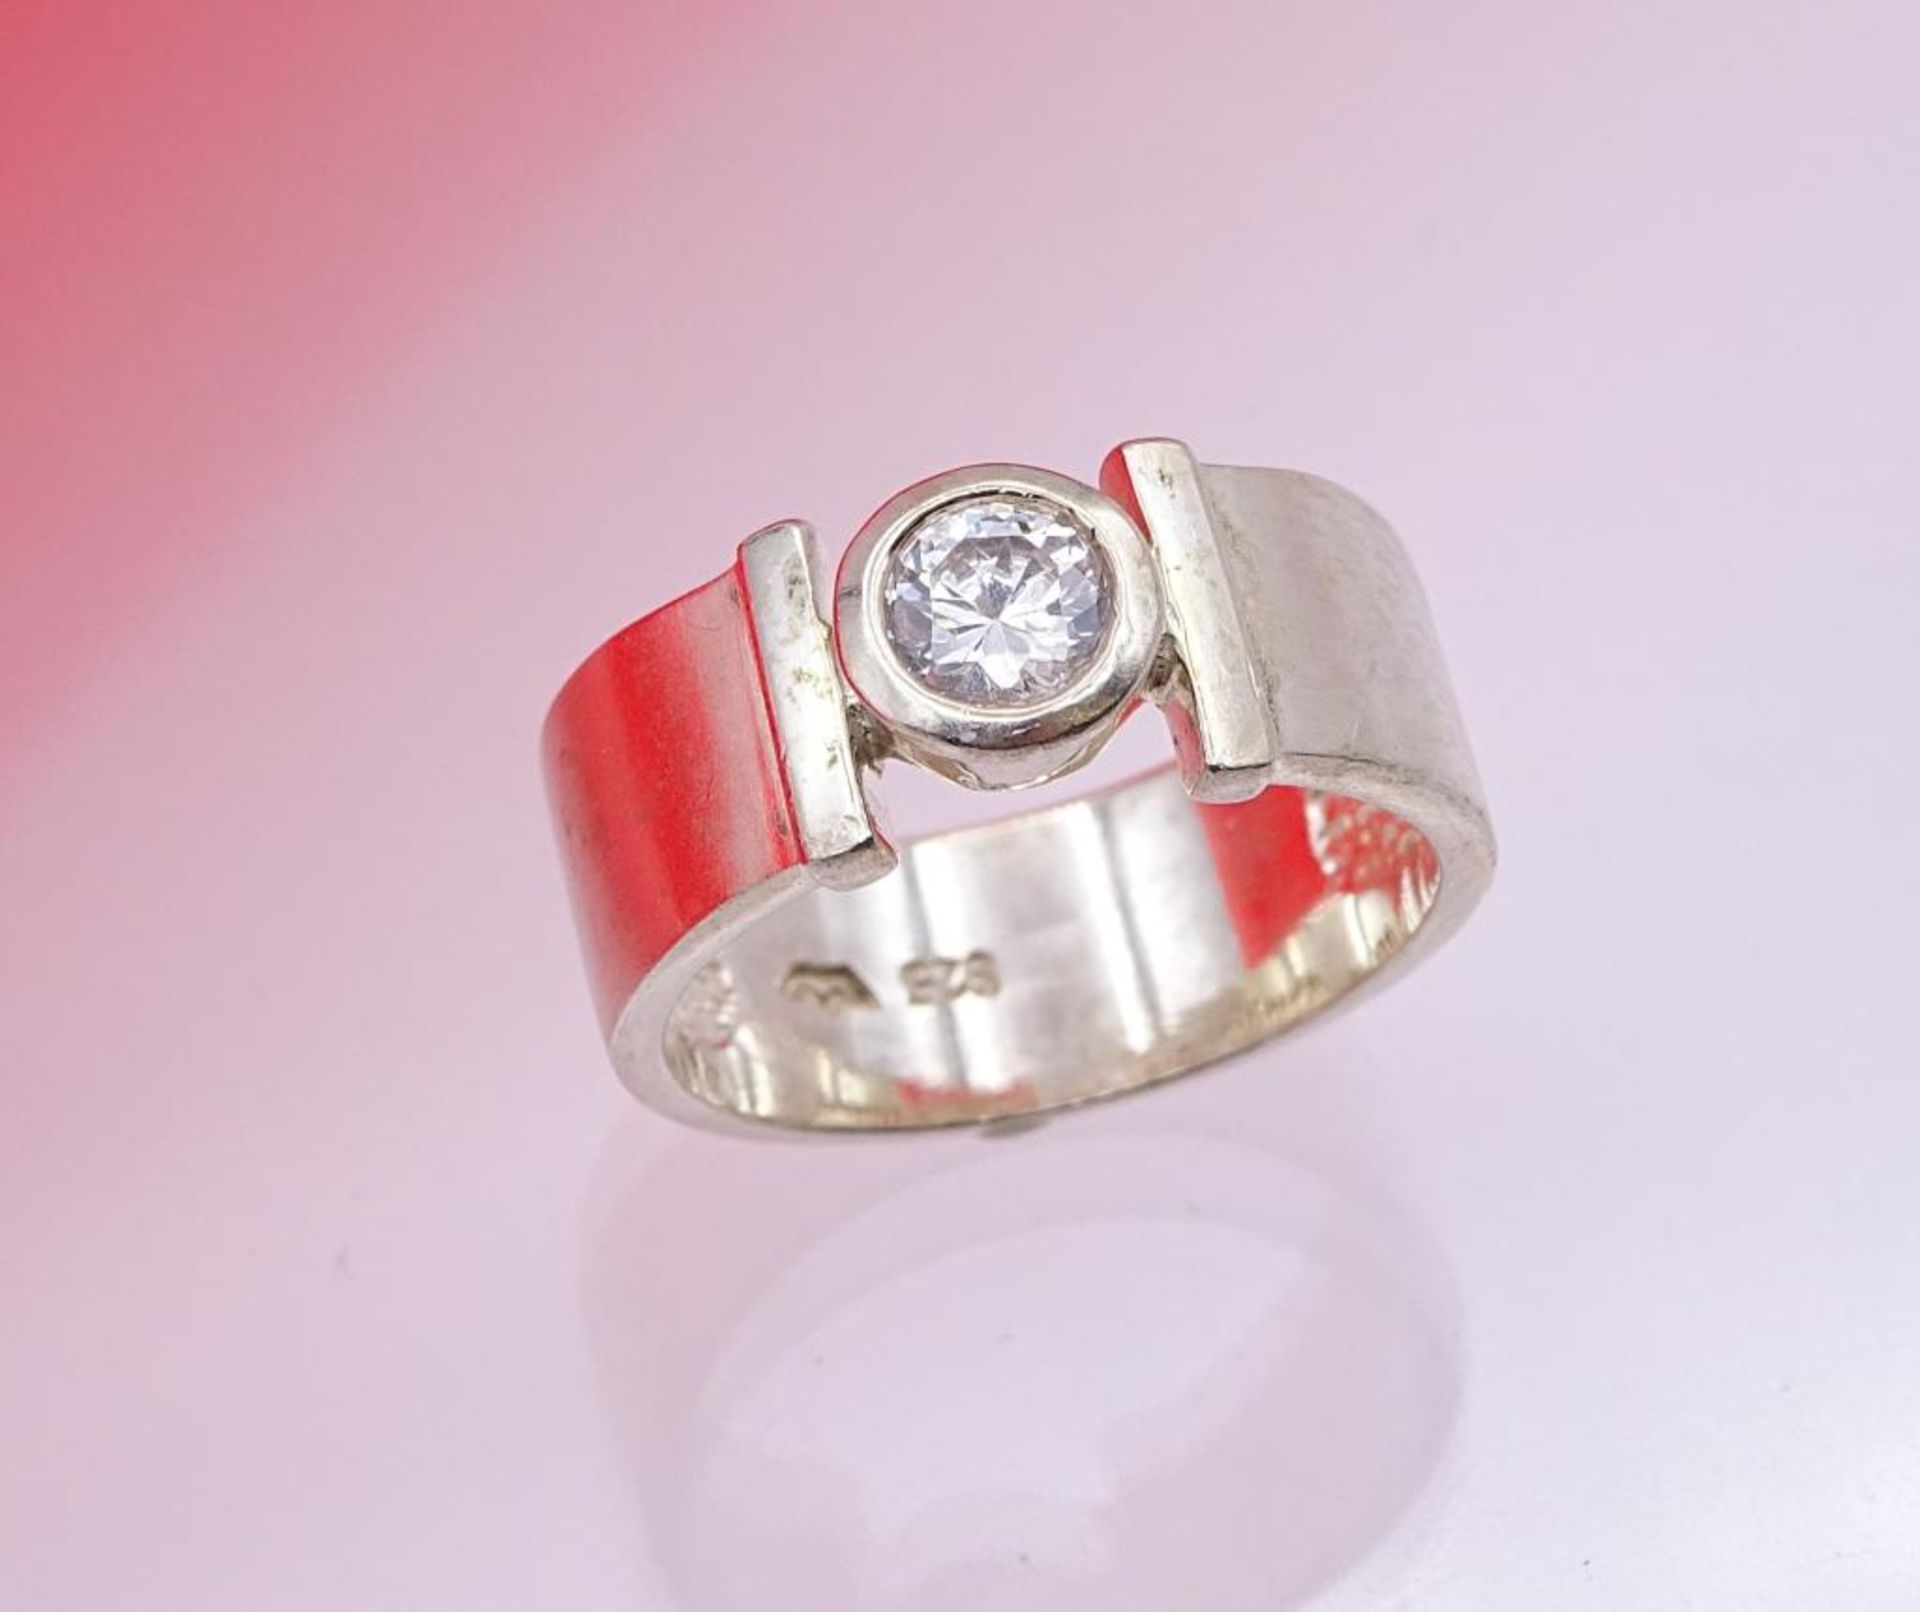 925er Silber Ring mit einen Zirkon, 5,3gr., RG 54